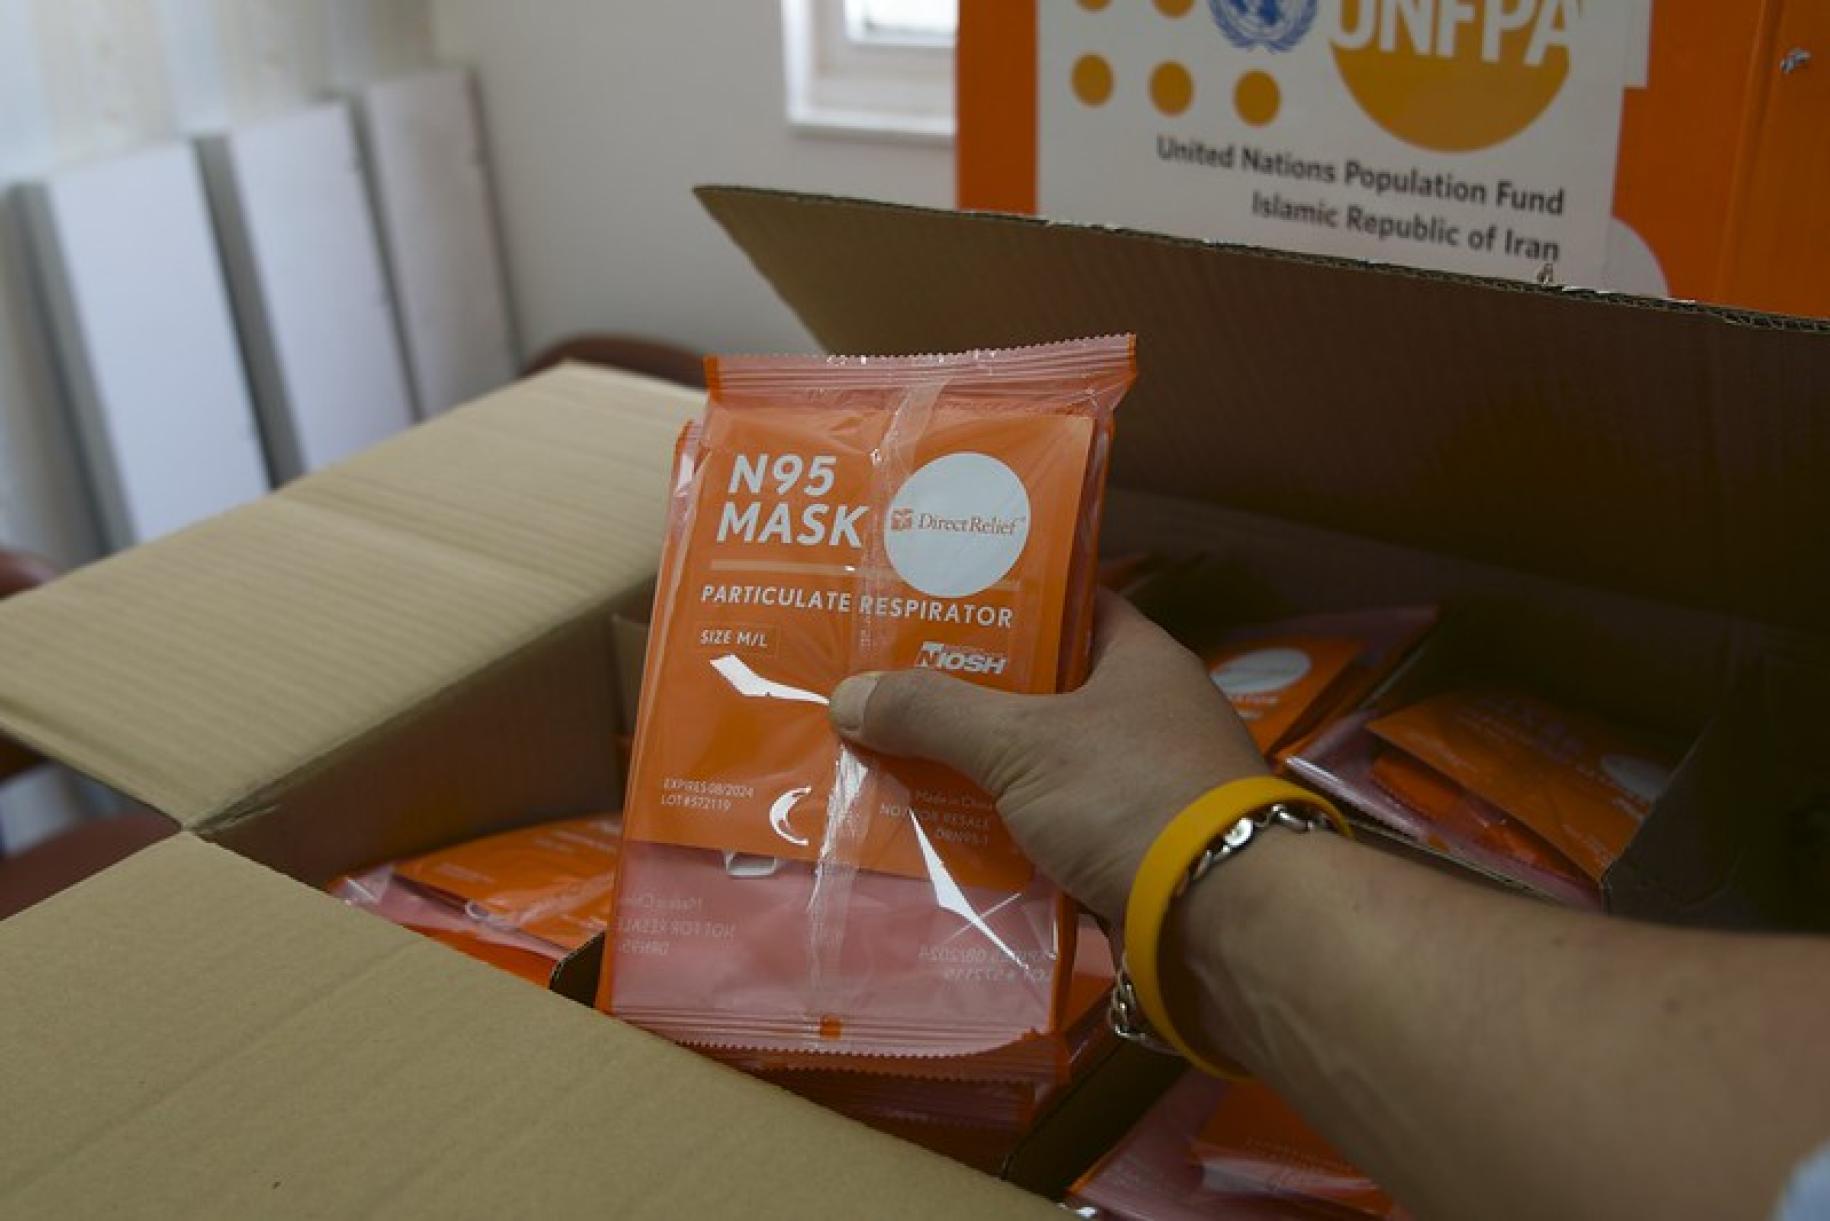 Una mano sostiene un paquete de EPP sobre una caja donada por el UNFPA.